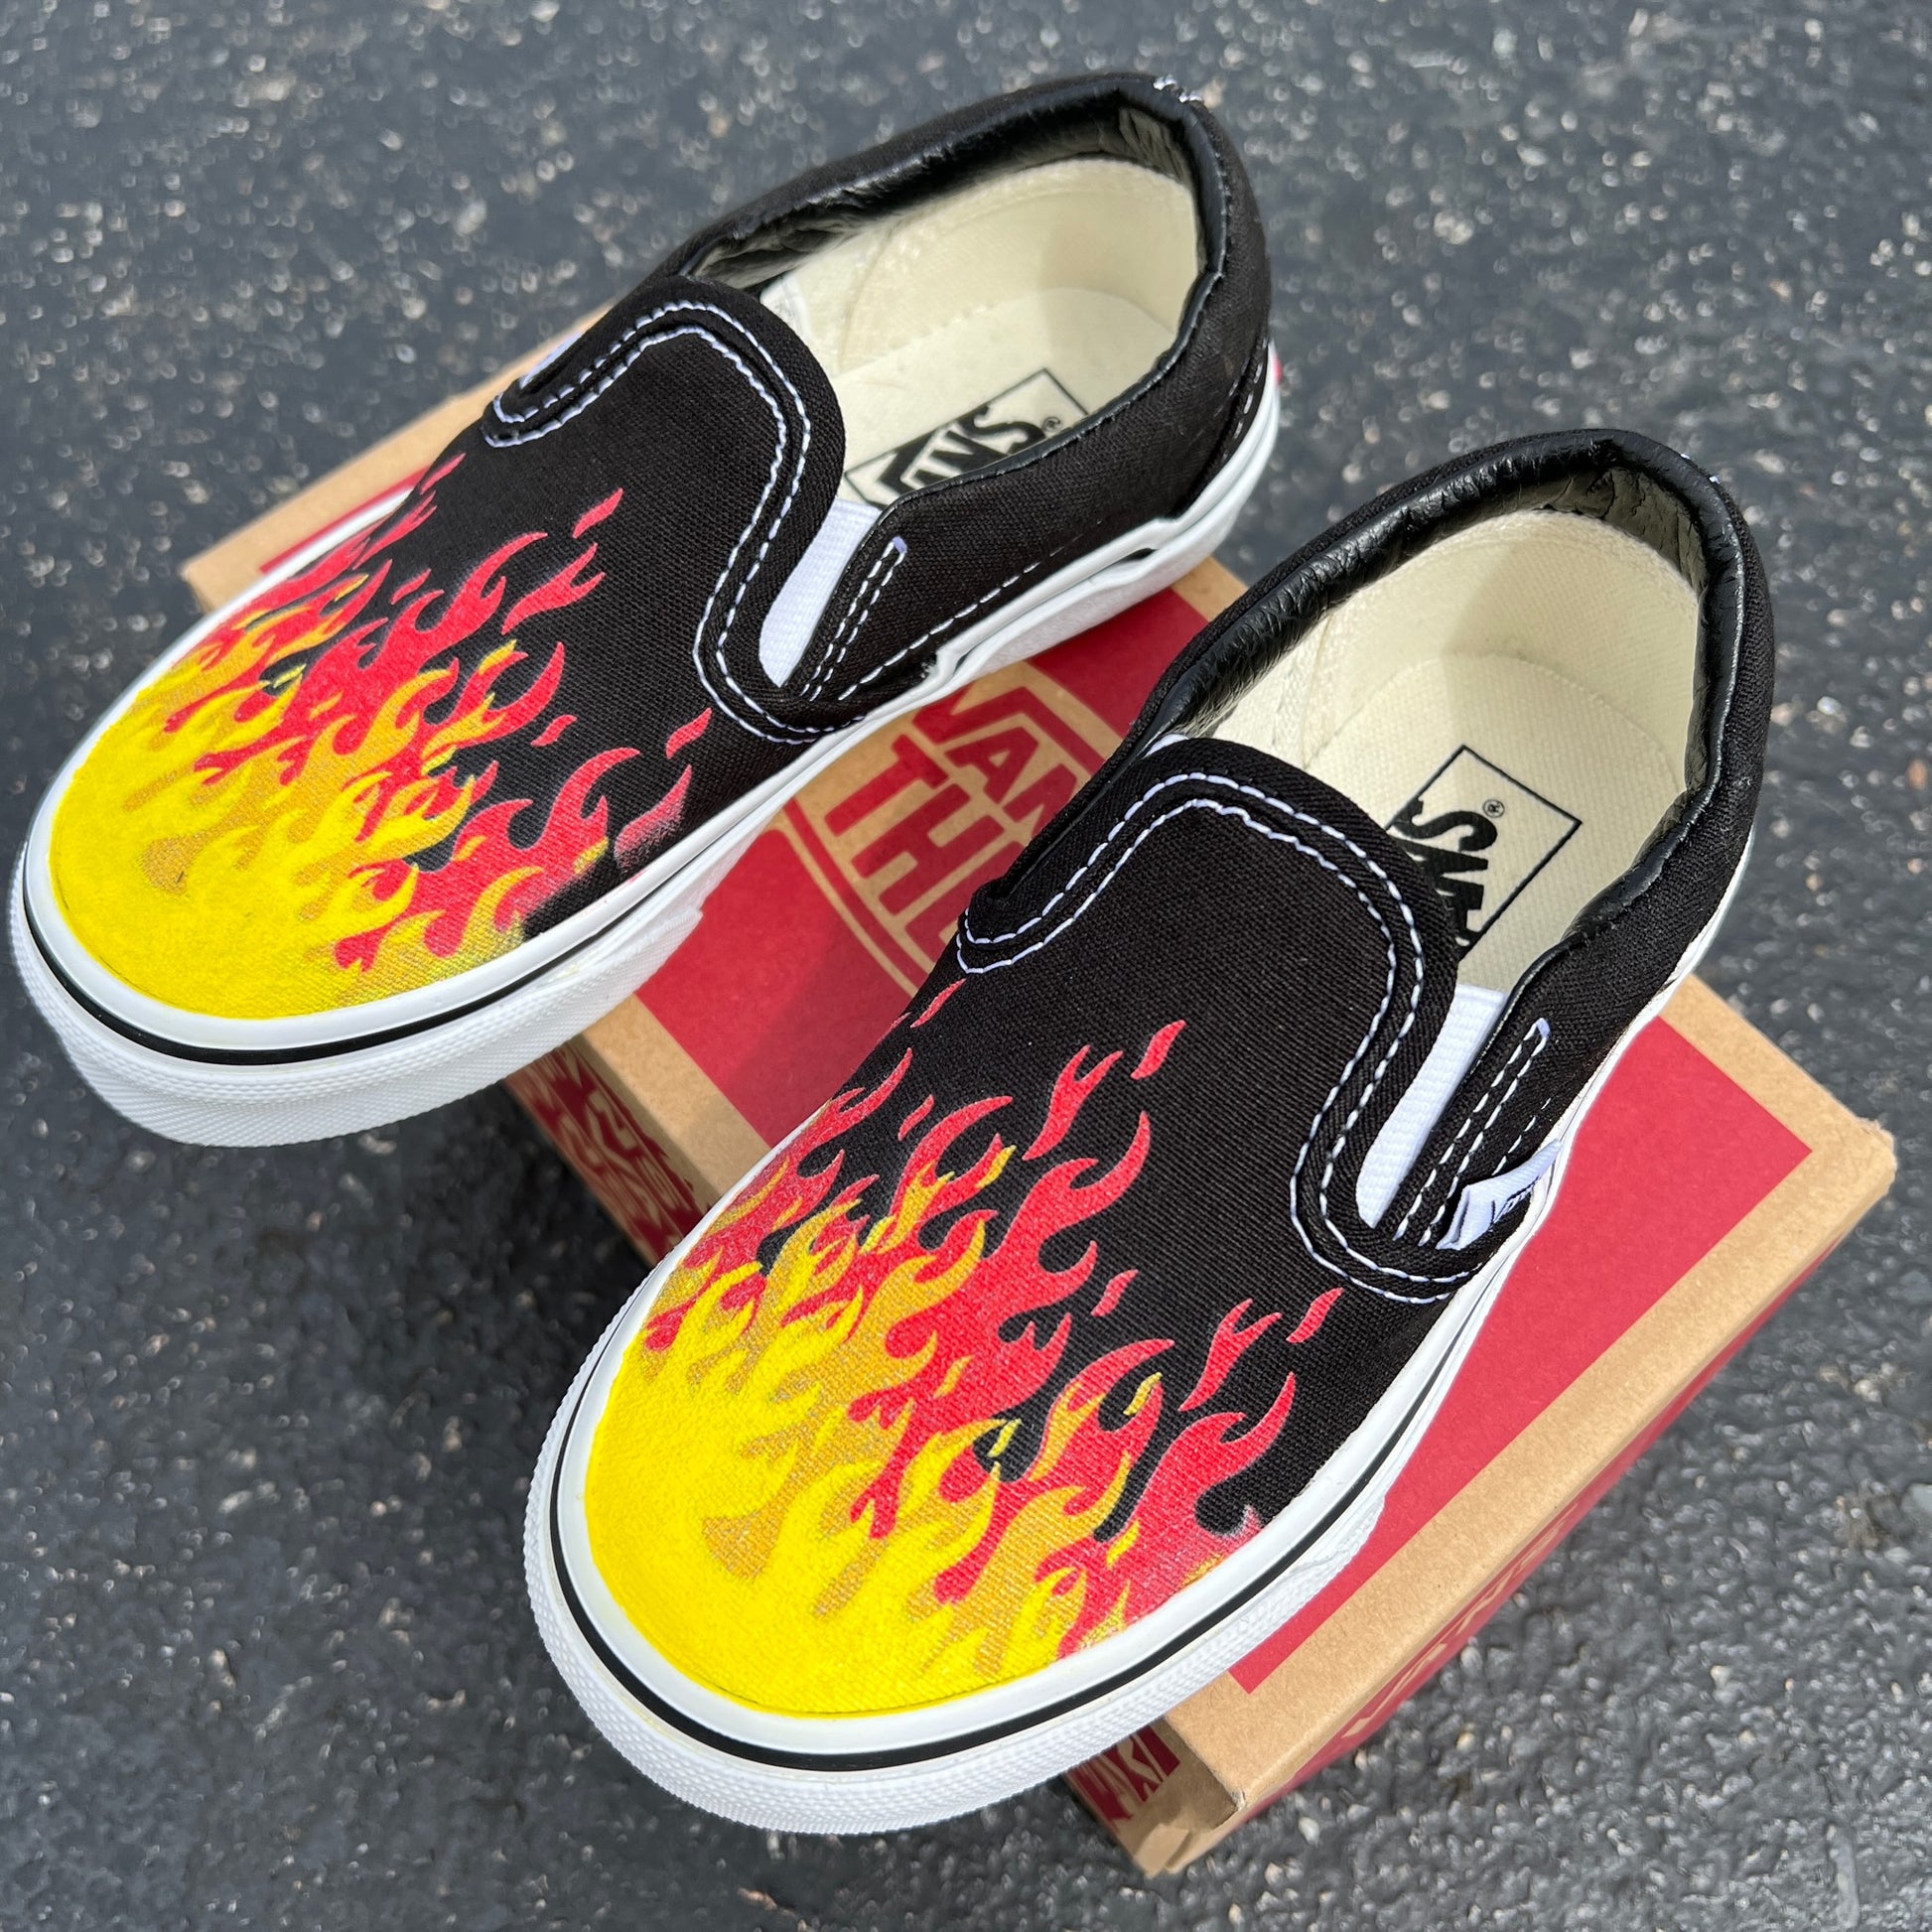 Vans, Shoes, Slip On Vans Custom Drip And Fire